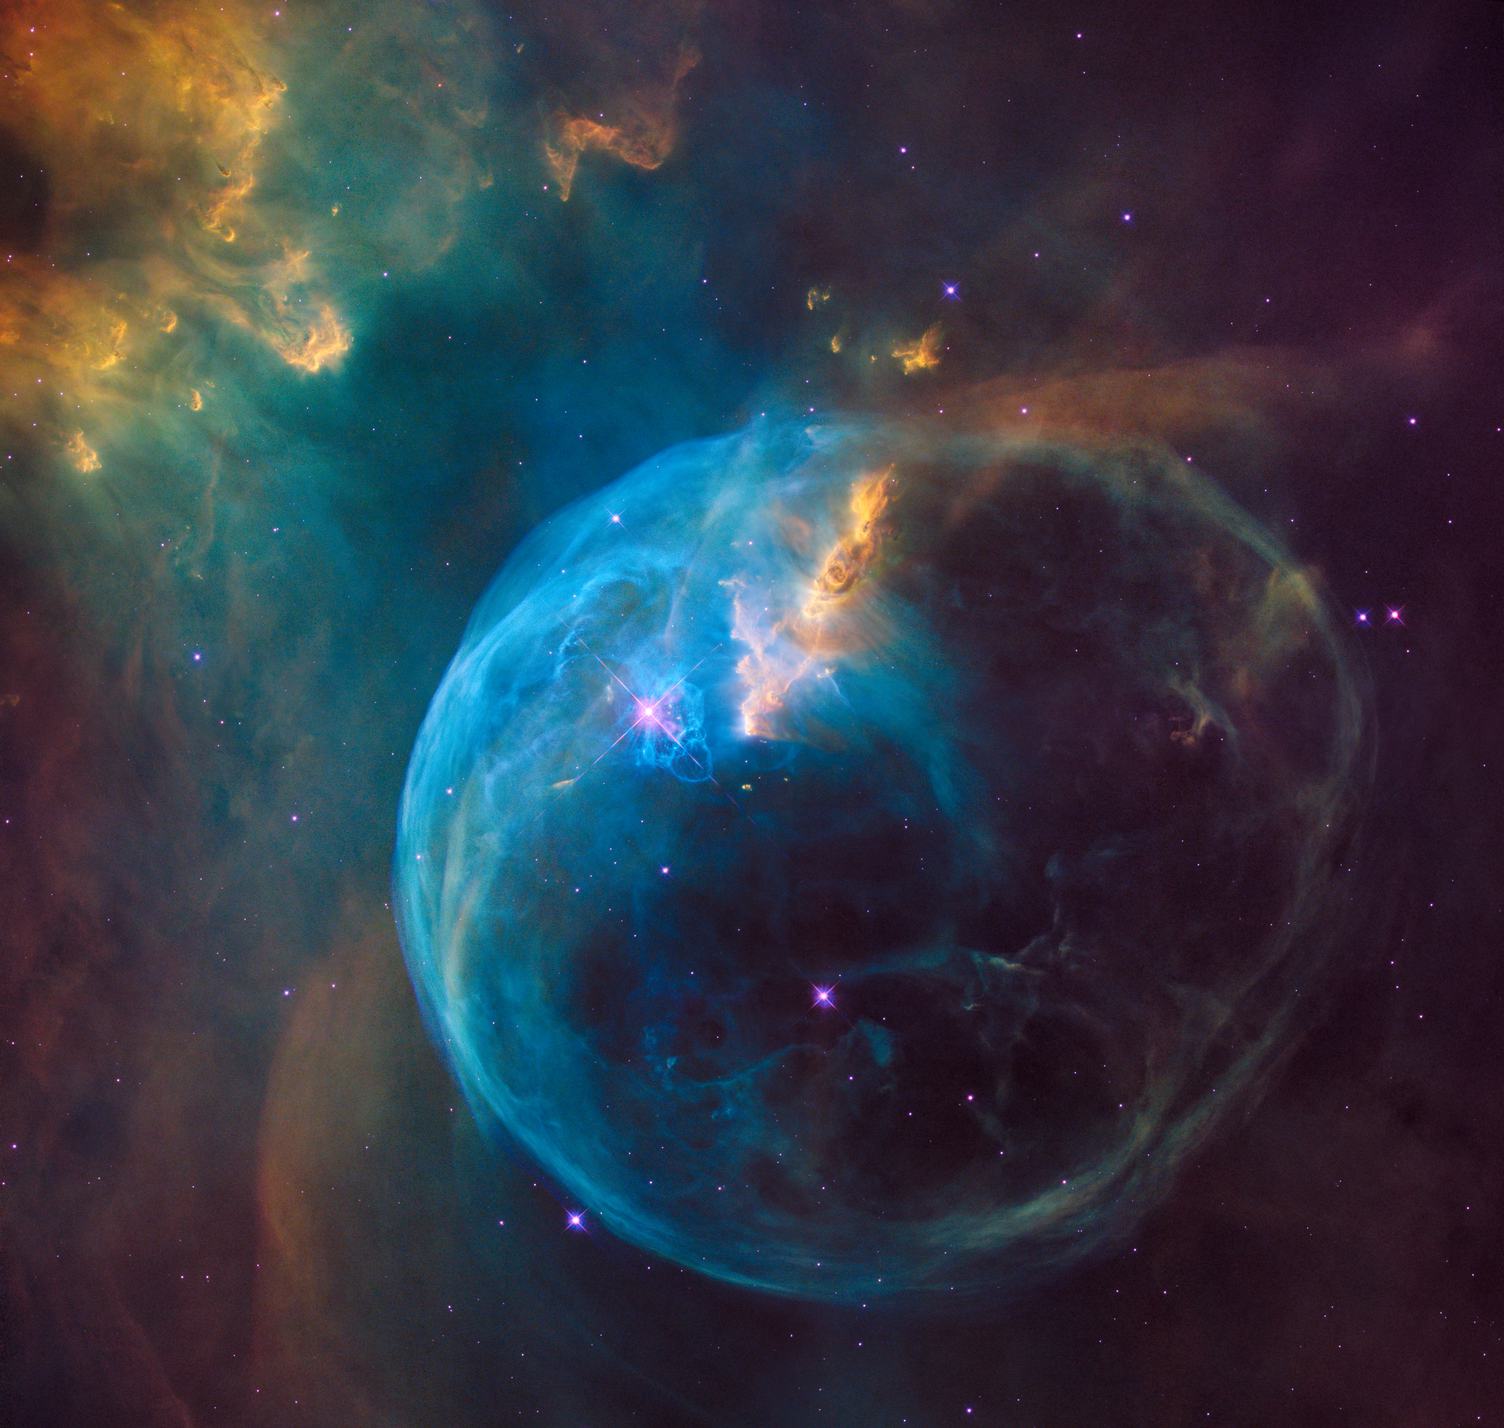 Super Nova Nebula